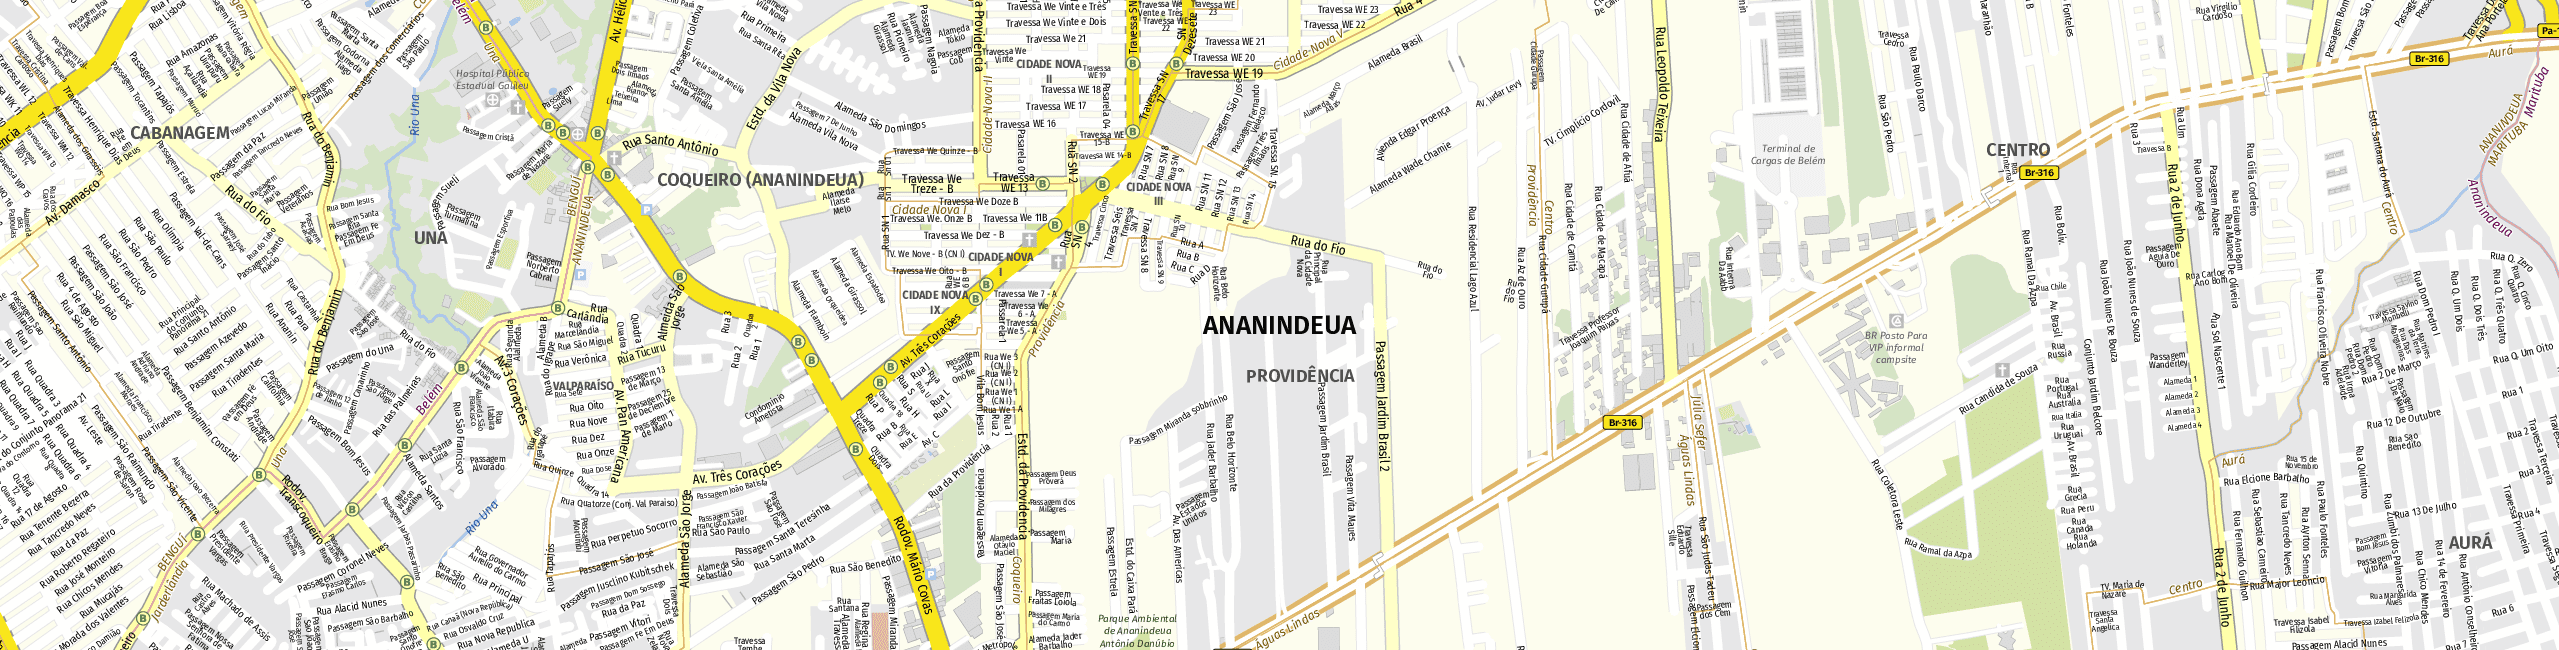 Stadtplan Ananindeua zum Downloaden.